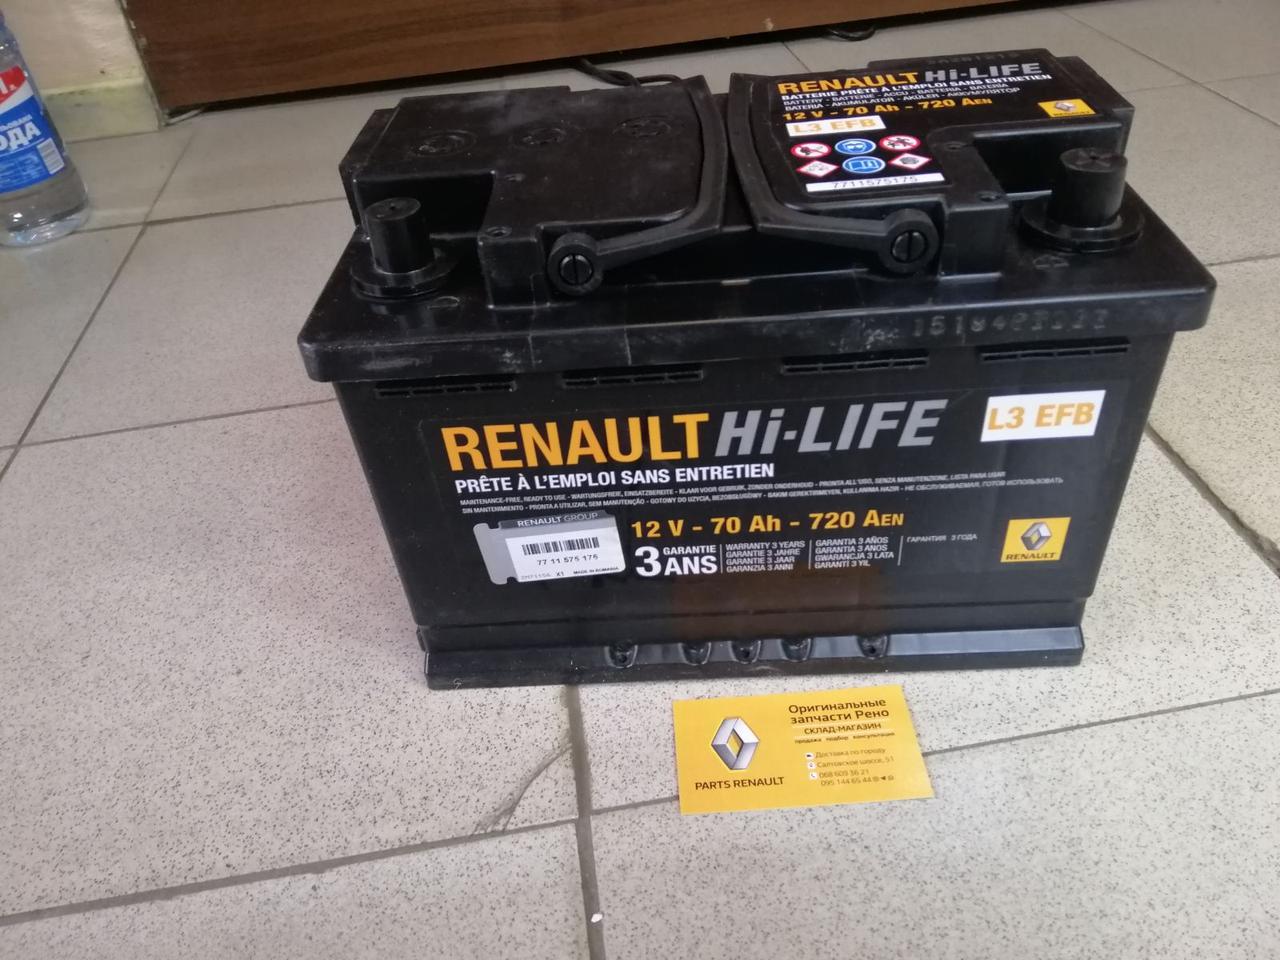 Аккумулятор автомобильный рено. Аккумулятор Renault Hi-Life 12v 70ah. АКБ Renault Hi-Life 70ah. Renault Hi-Life 12v 70ah 720a. Аккумулятор Renault 70ah 720a.